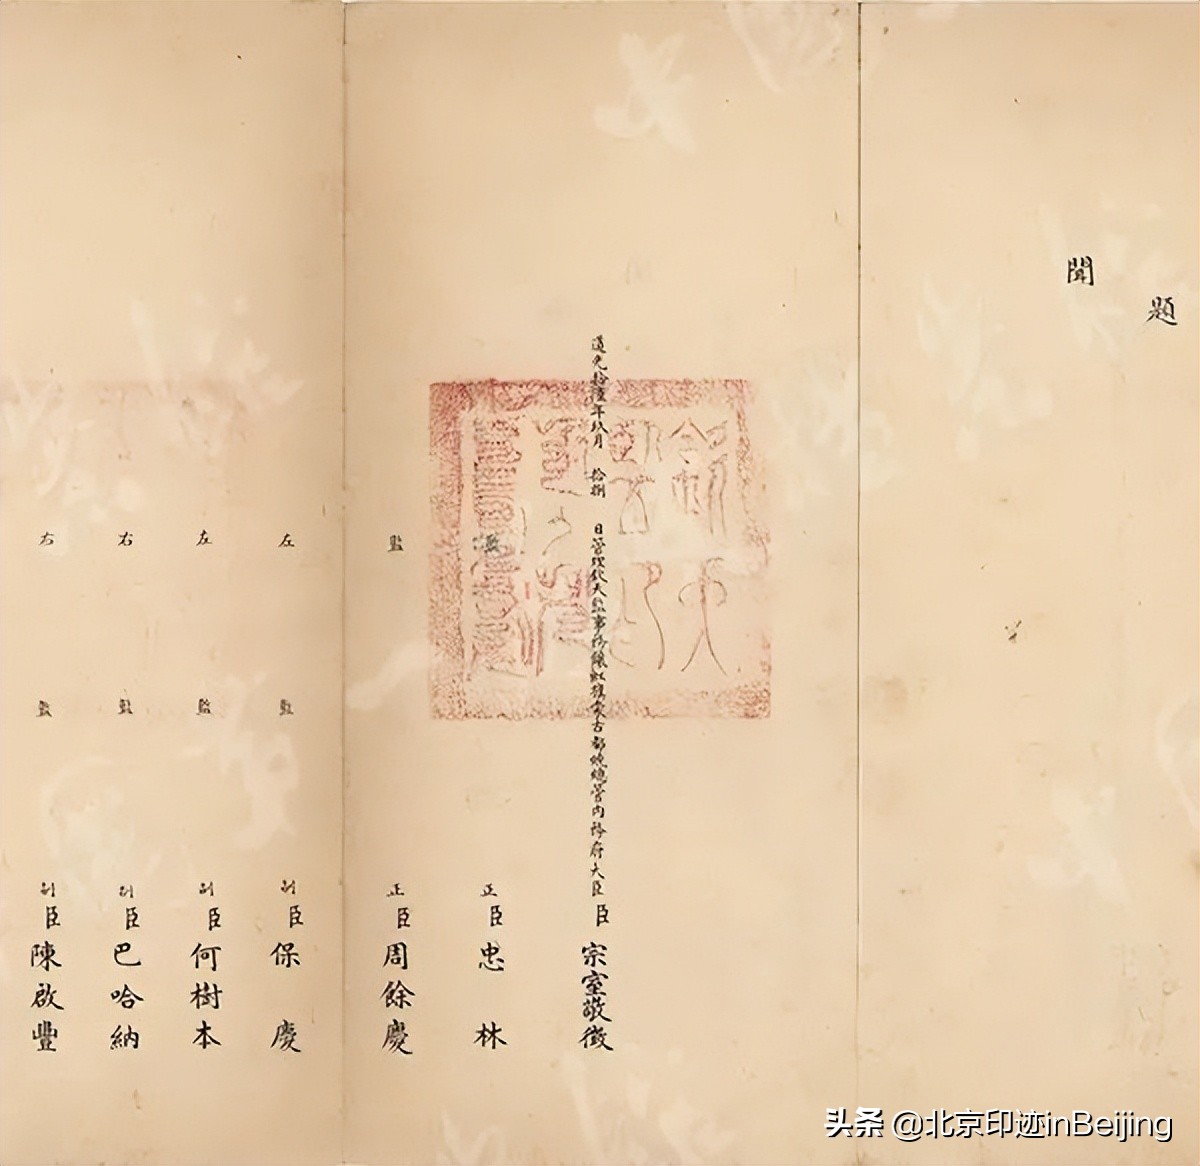 京城古迹丨巡天遥看一千河——档案中的北京古观象台